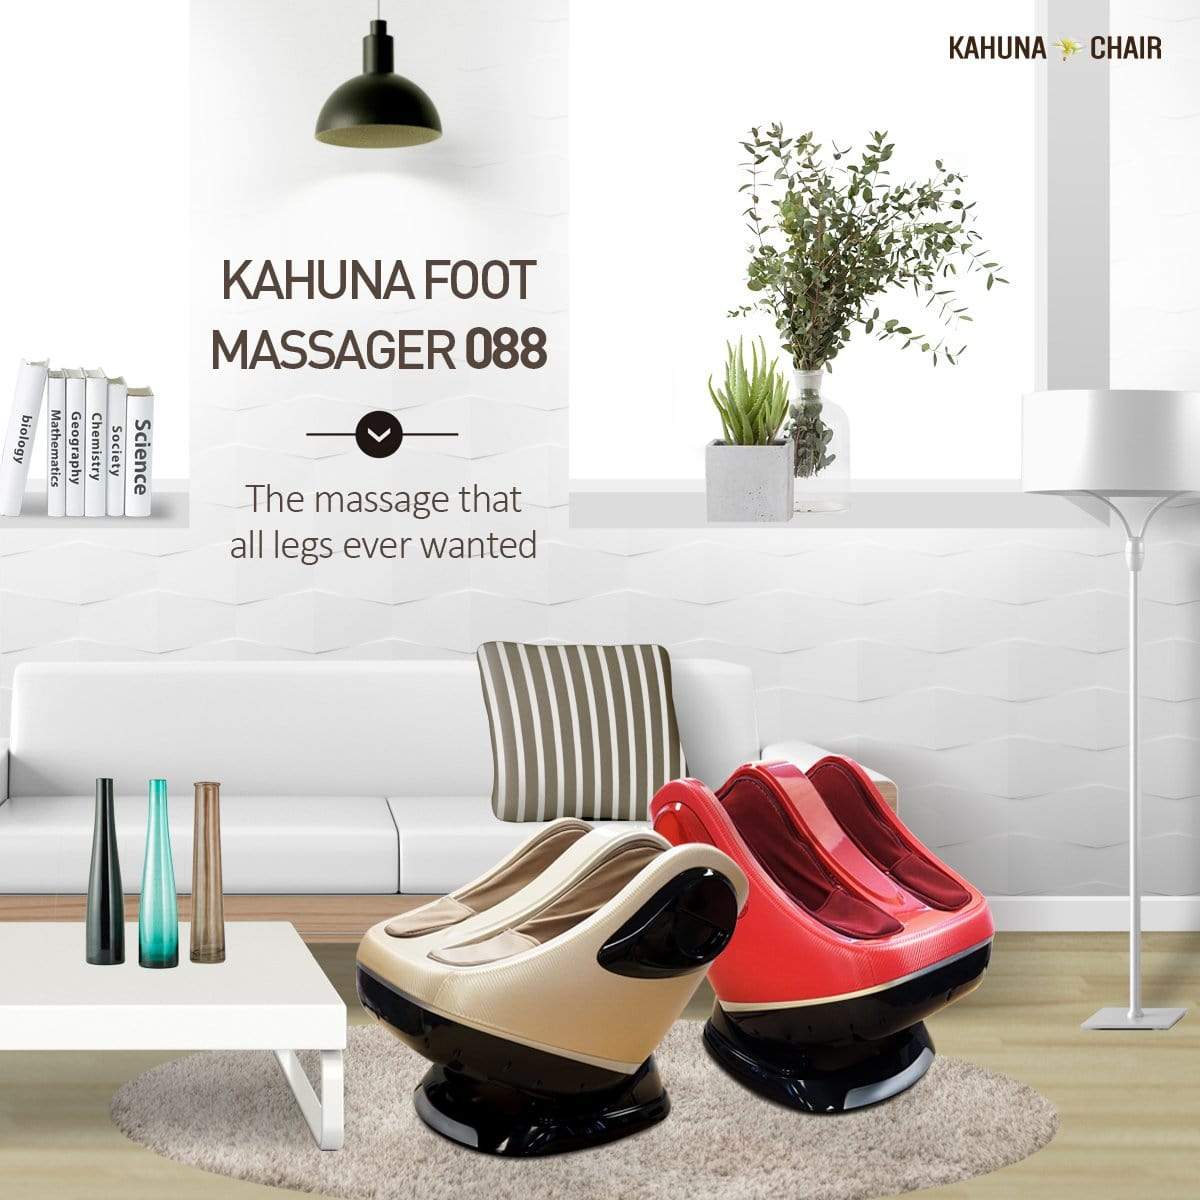 Ace Massage Chairs Kahuna Foot Massager - 088